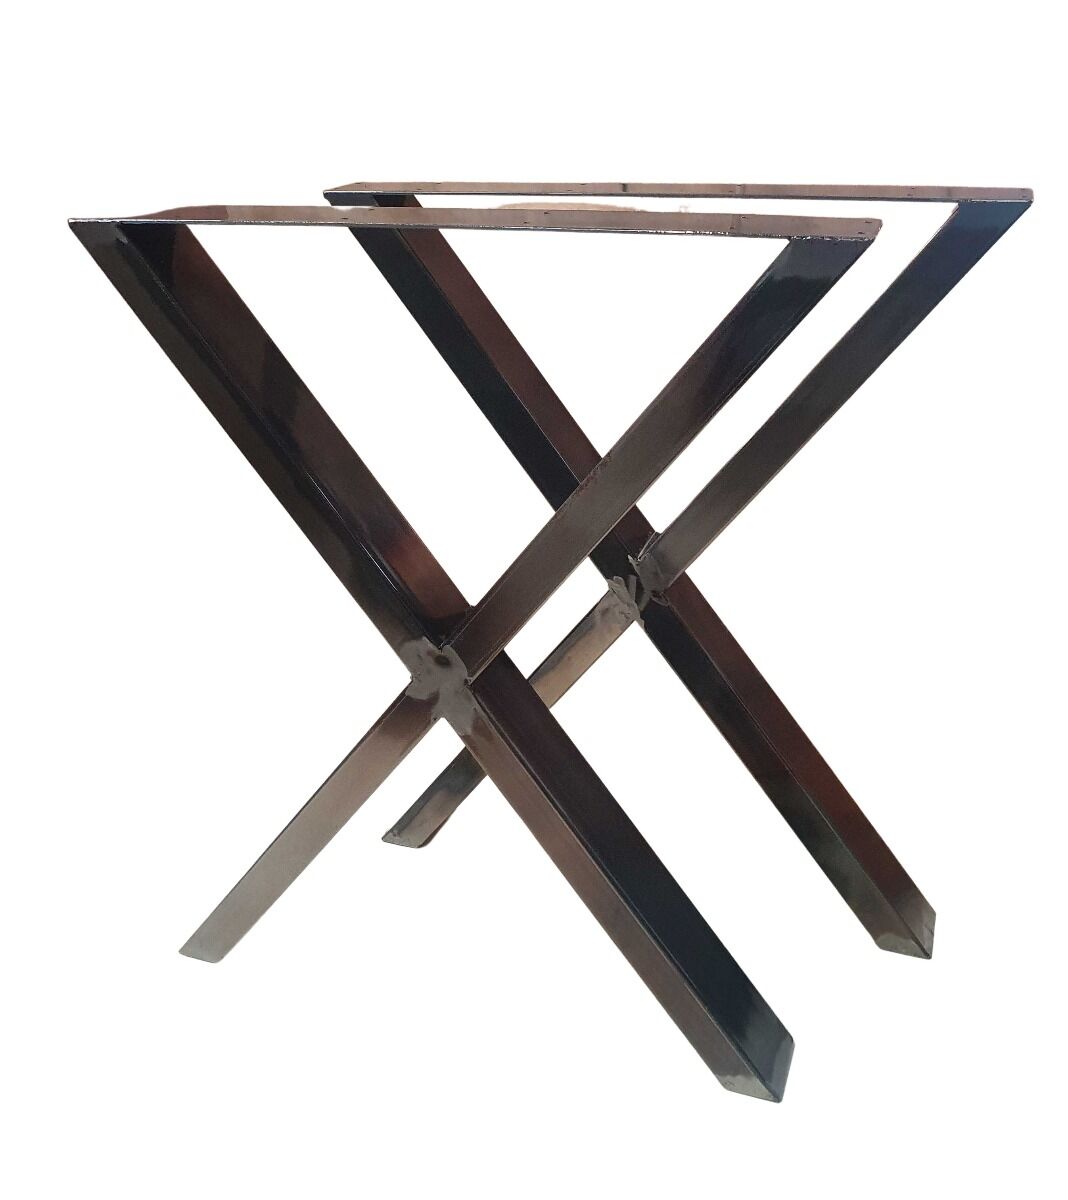 Bc-elec - HMLT-3-RUS Jeu de 2 Pieds de table en acier brut vernis format X, Pieds de table métal 60x72cm, Design Industriel